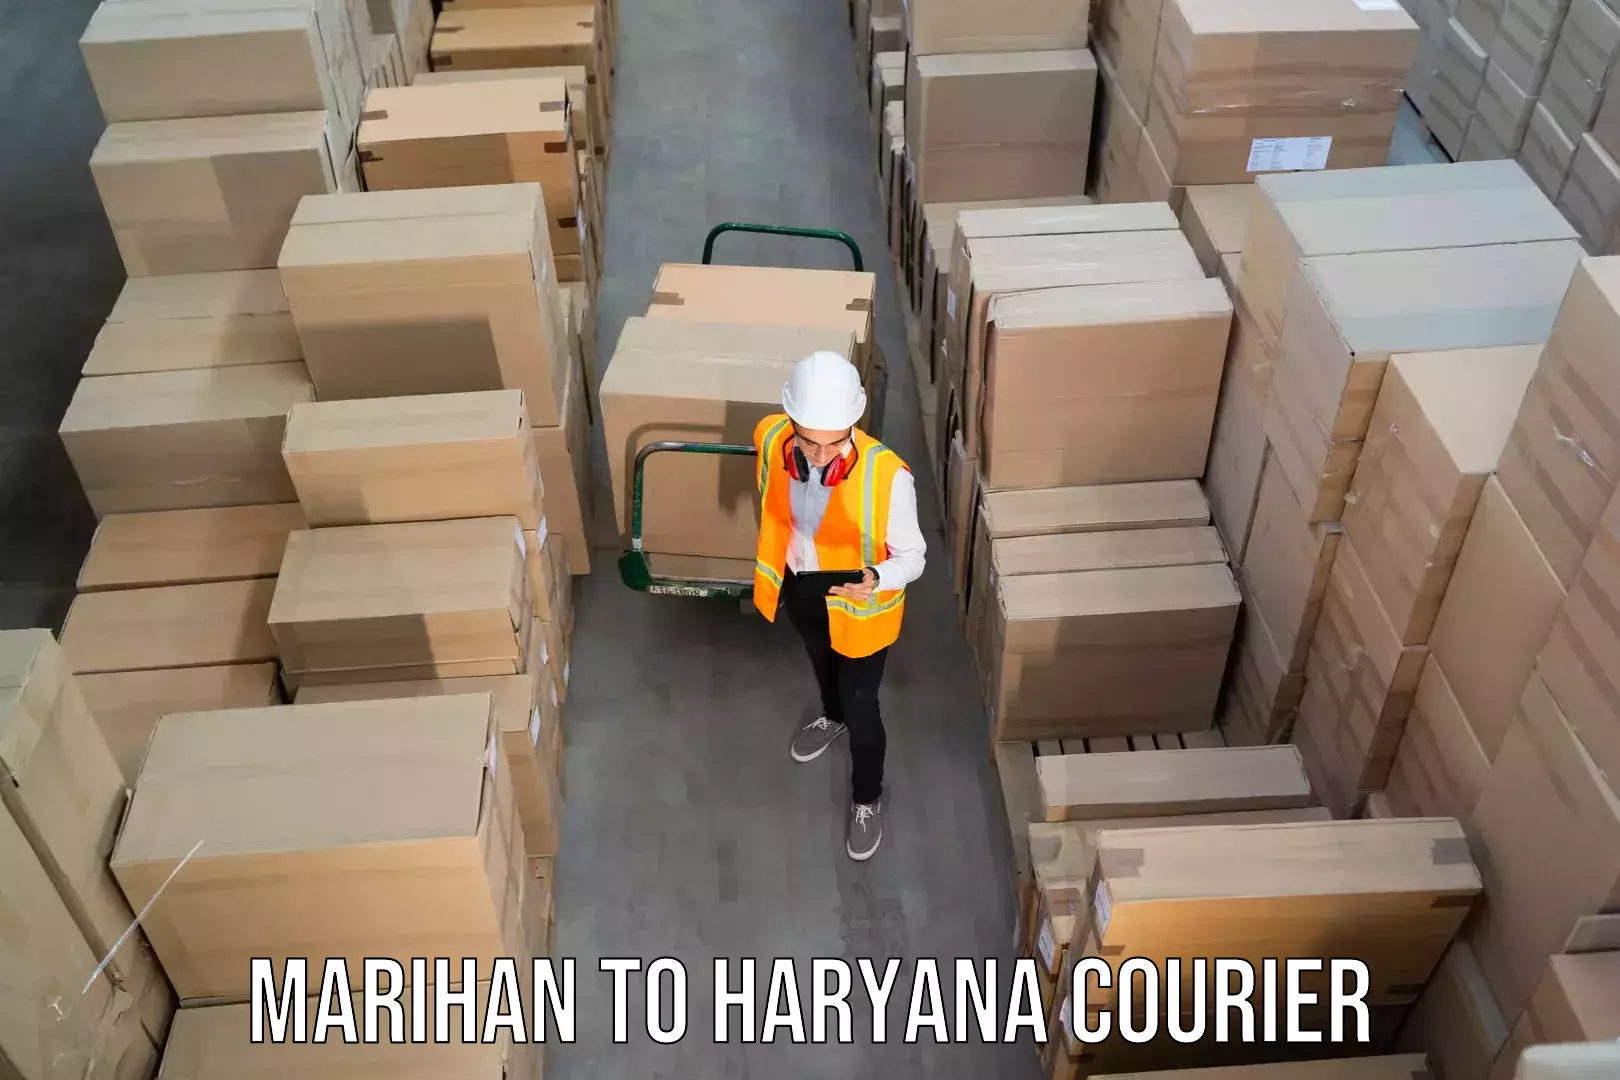 Fragile item shipping Marihan to IIIT Sonepat